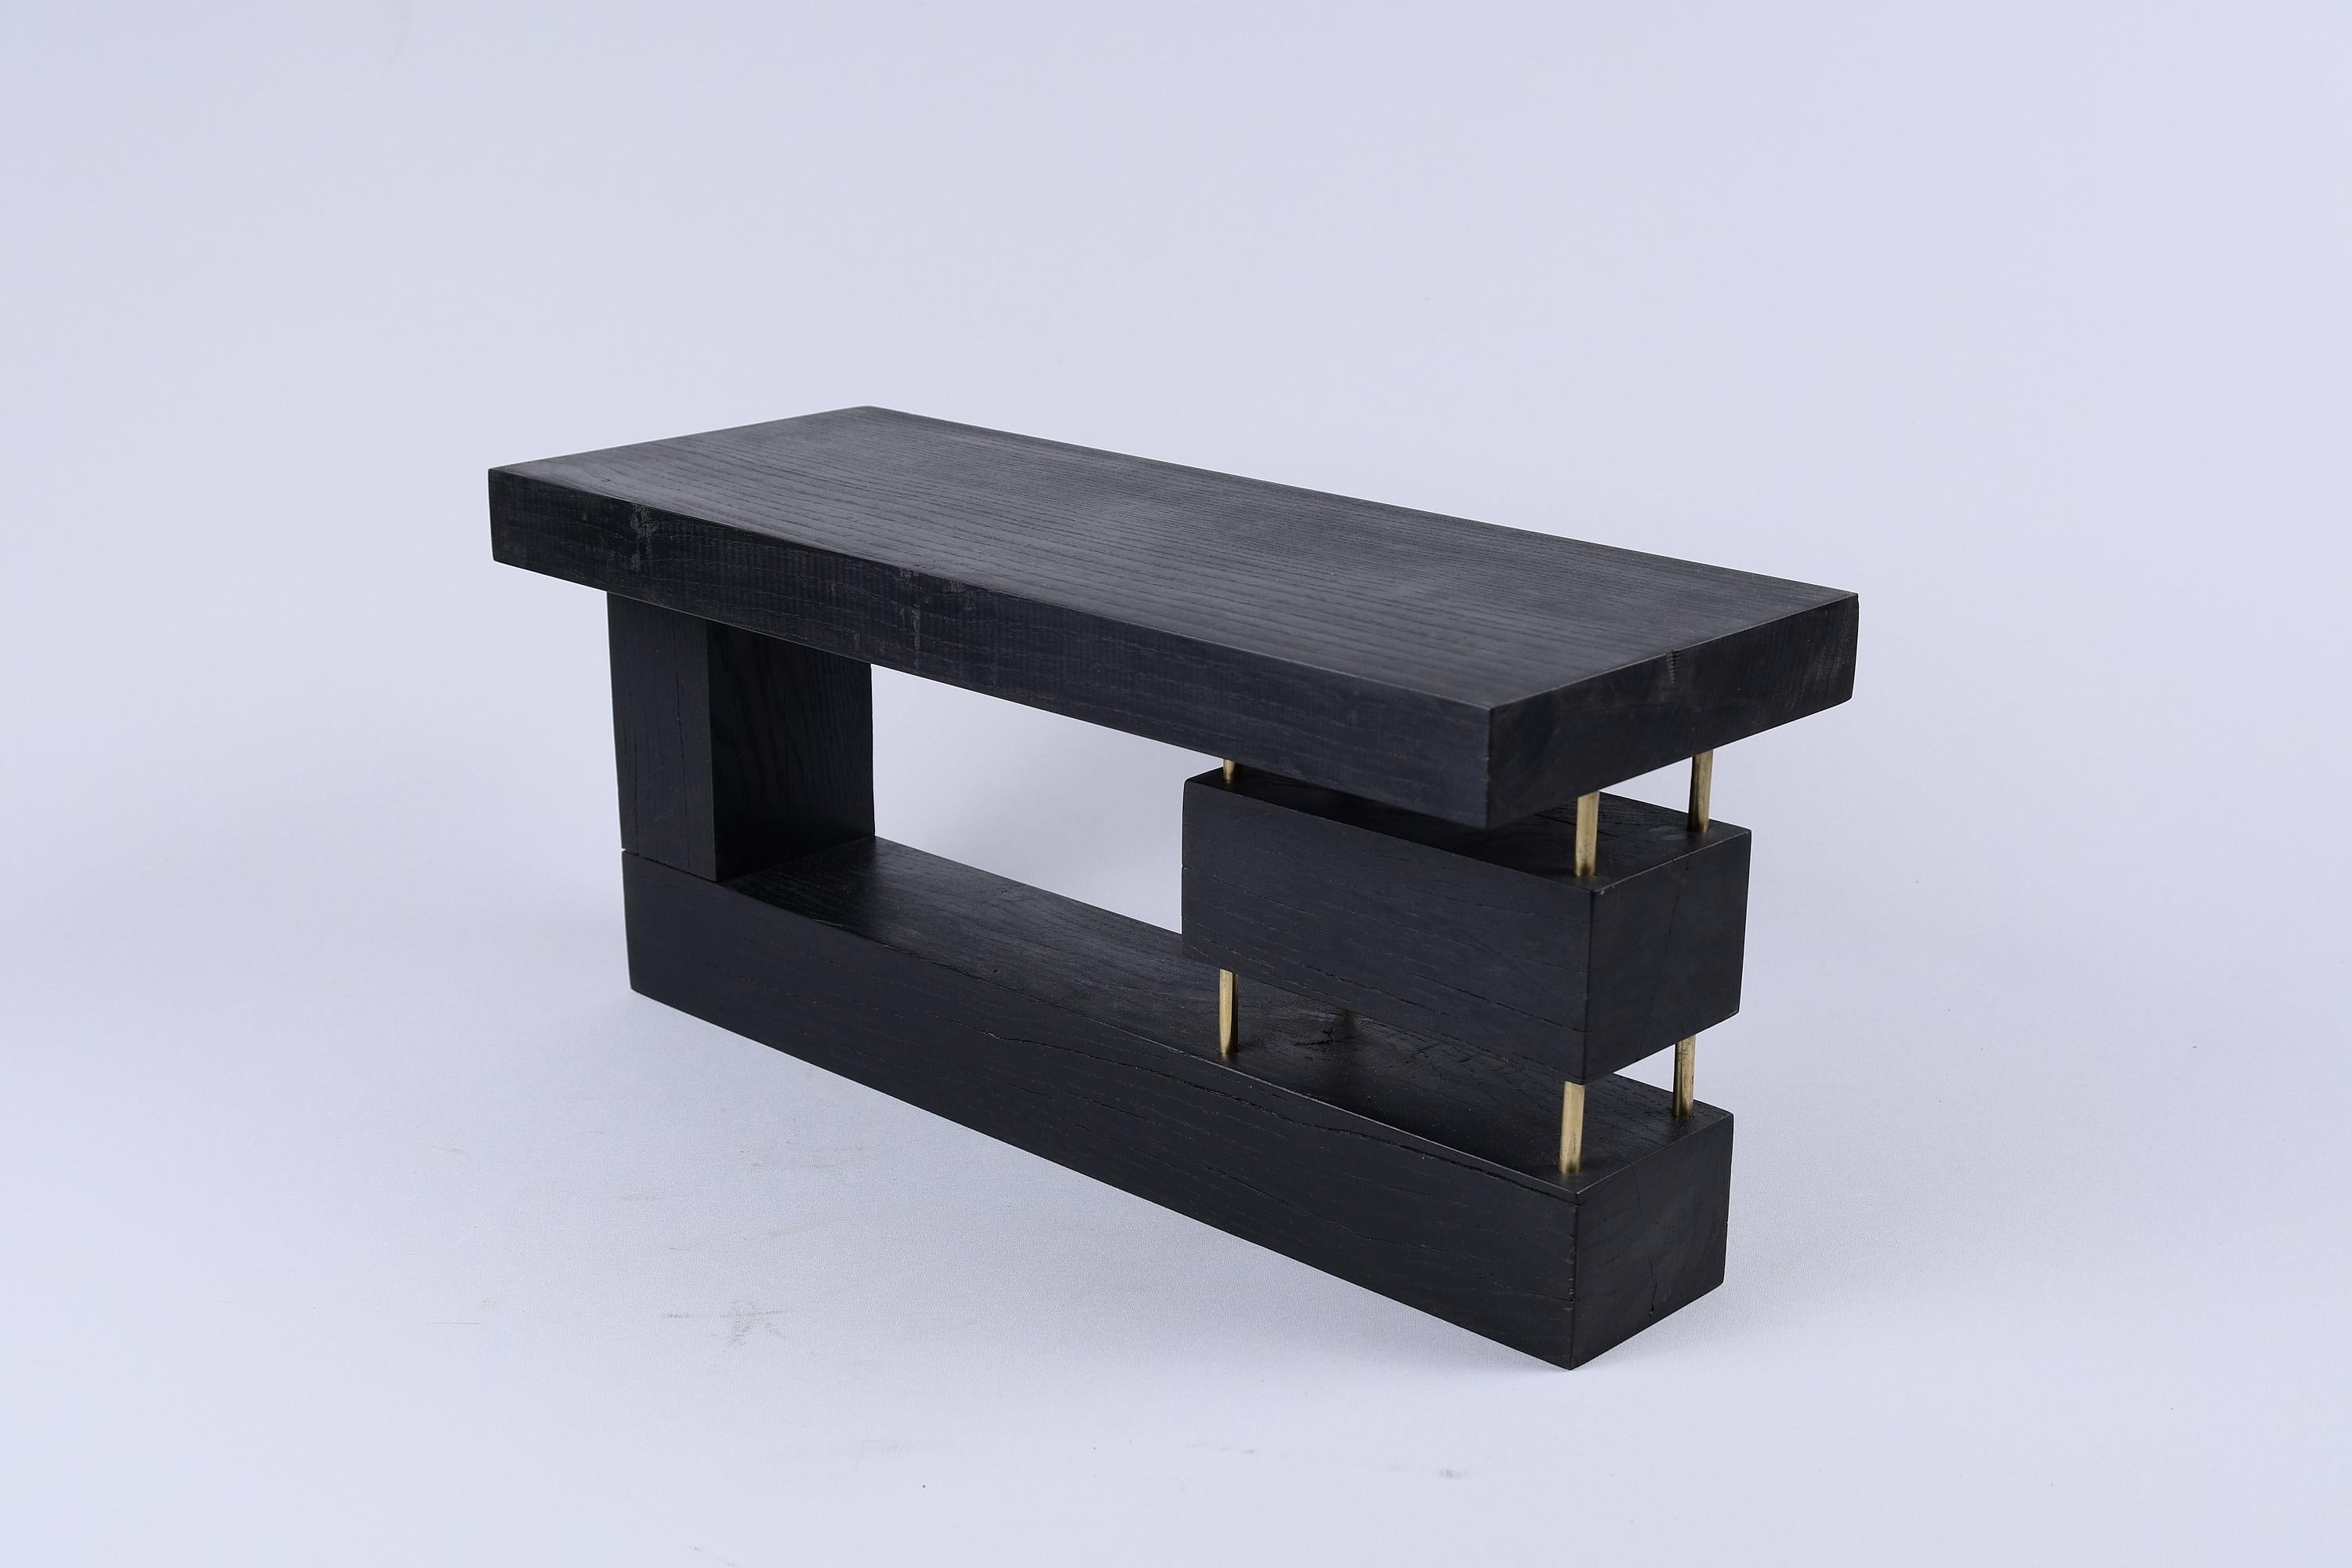 Pièce unique en bois utilisable comme table d'appoint ou simplement comme objet décoratif. Il est fabriqué à partir d'une combinaison de chêne brûlé et de laiton de haute qualité, et protégé par des huiles de la plus haute qualité, ce qui garantit